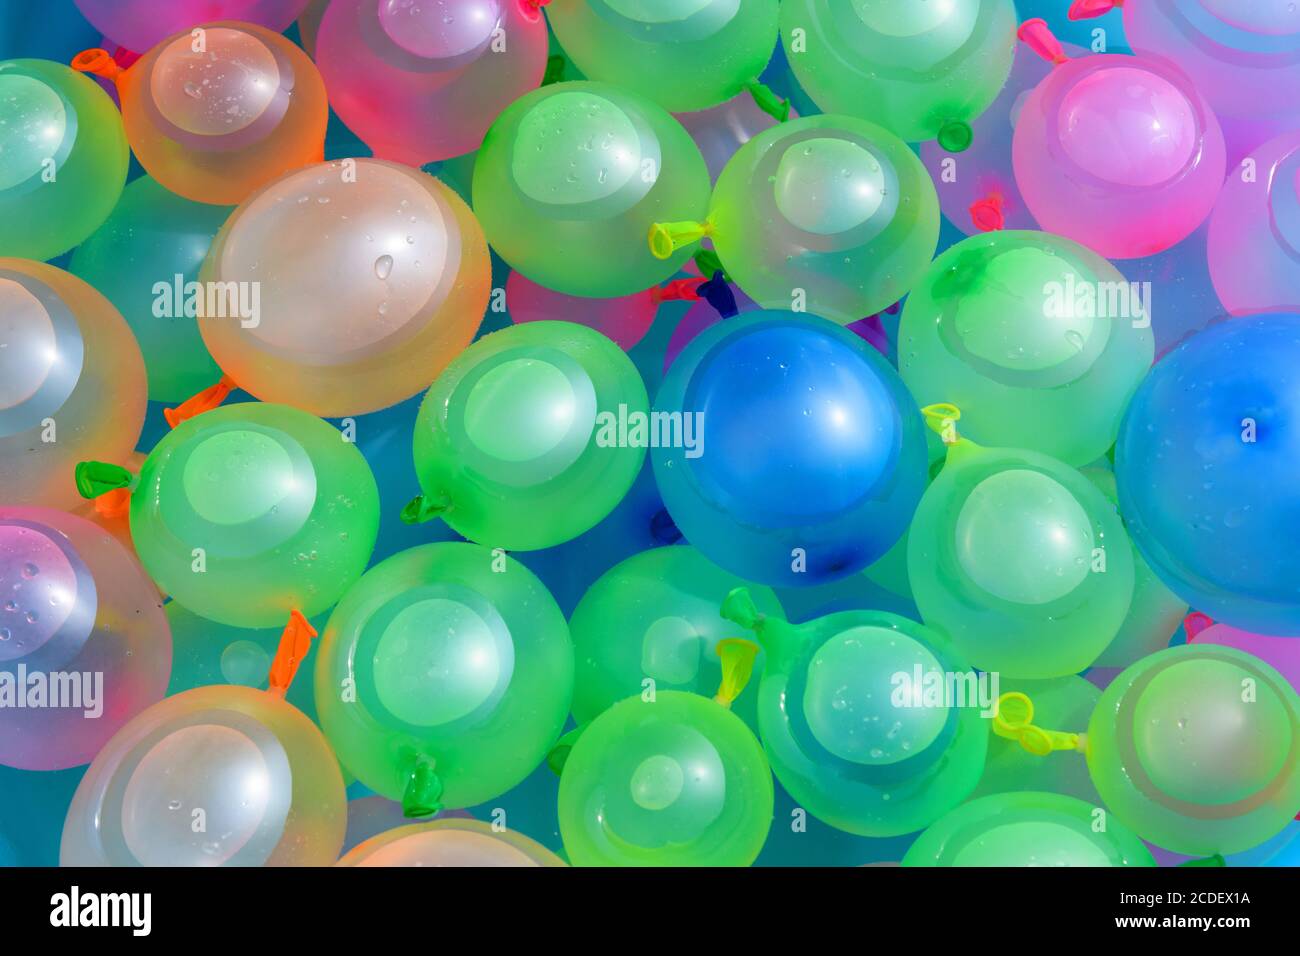 Hintergrundtextur von bunten Wasserbomben in bunten Latex-Ballons Für eine Party oder Abkühlung im heißen Sommer Stockfoto